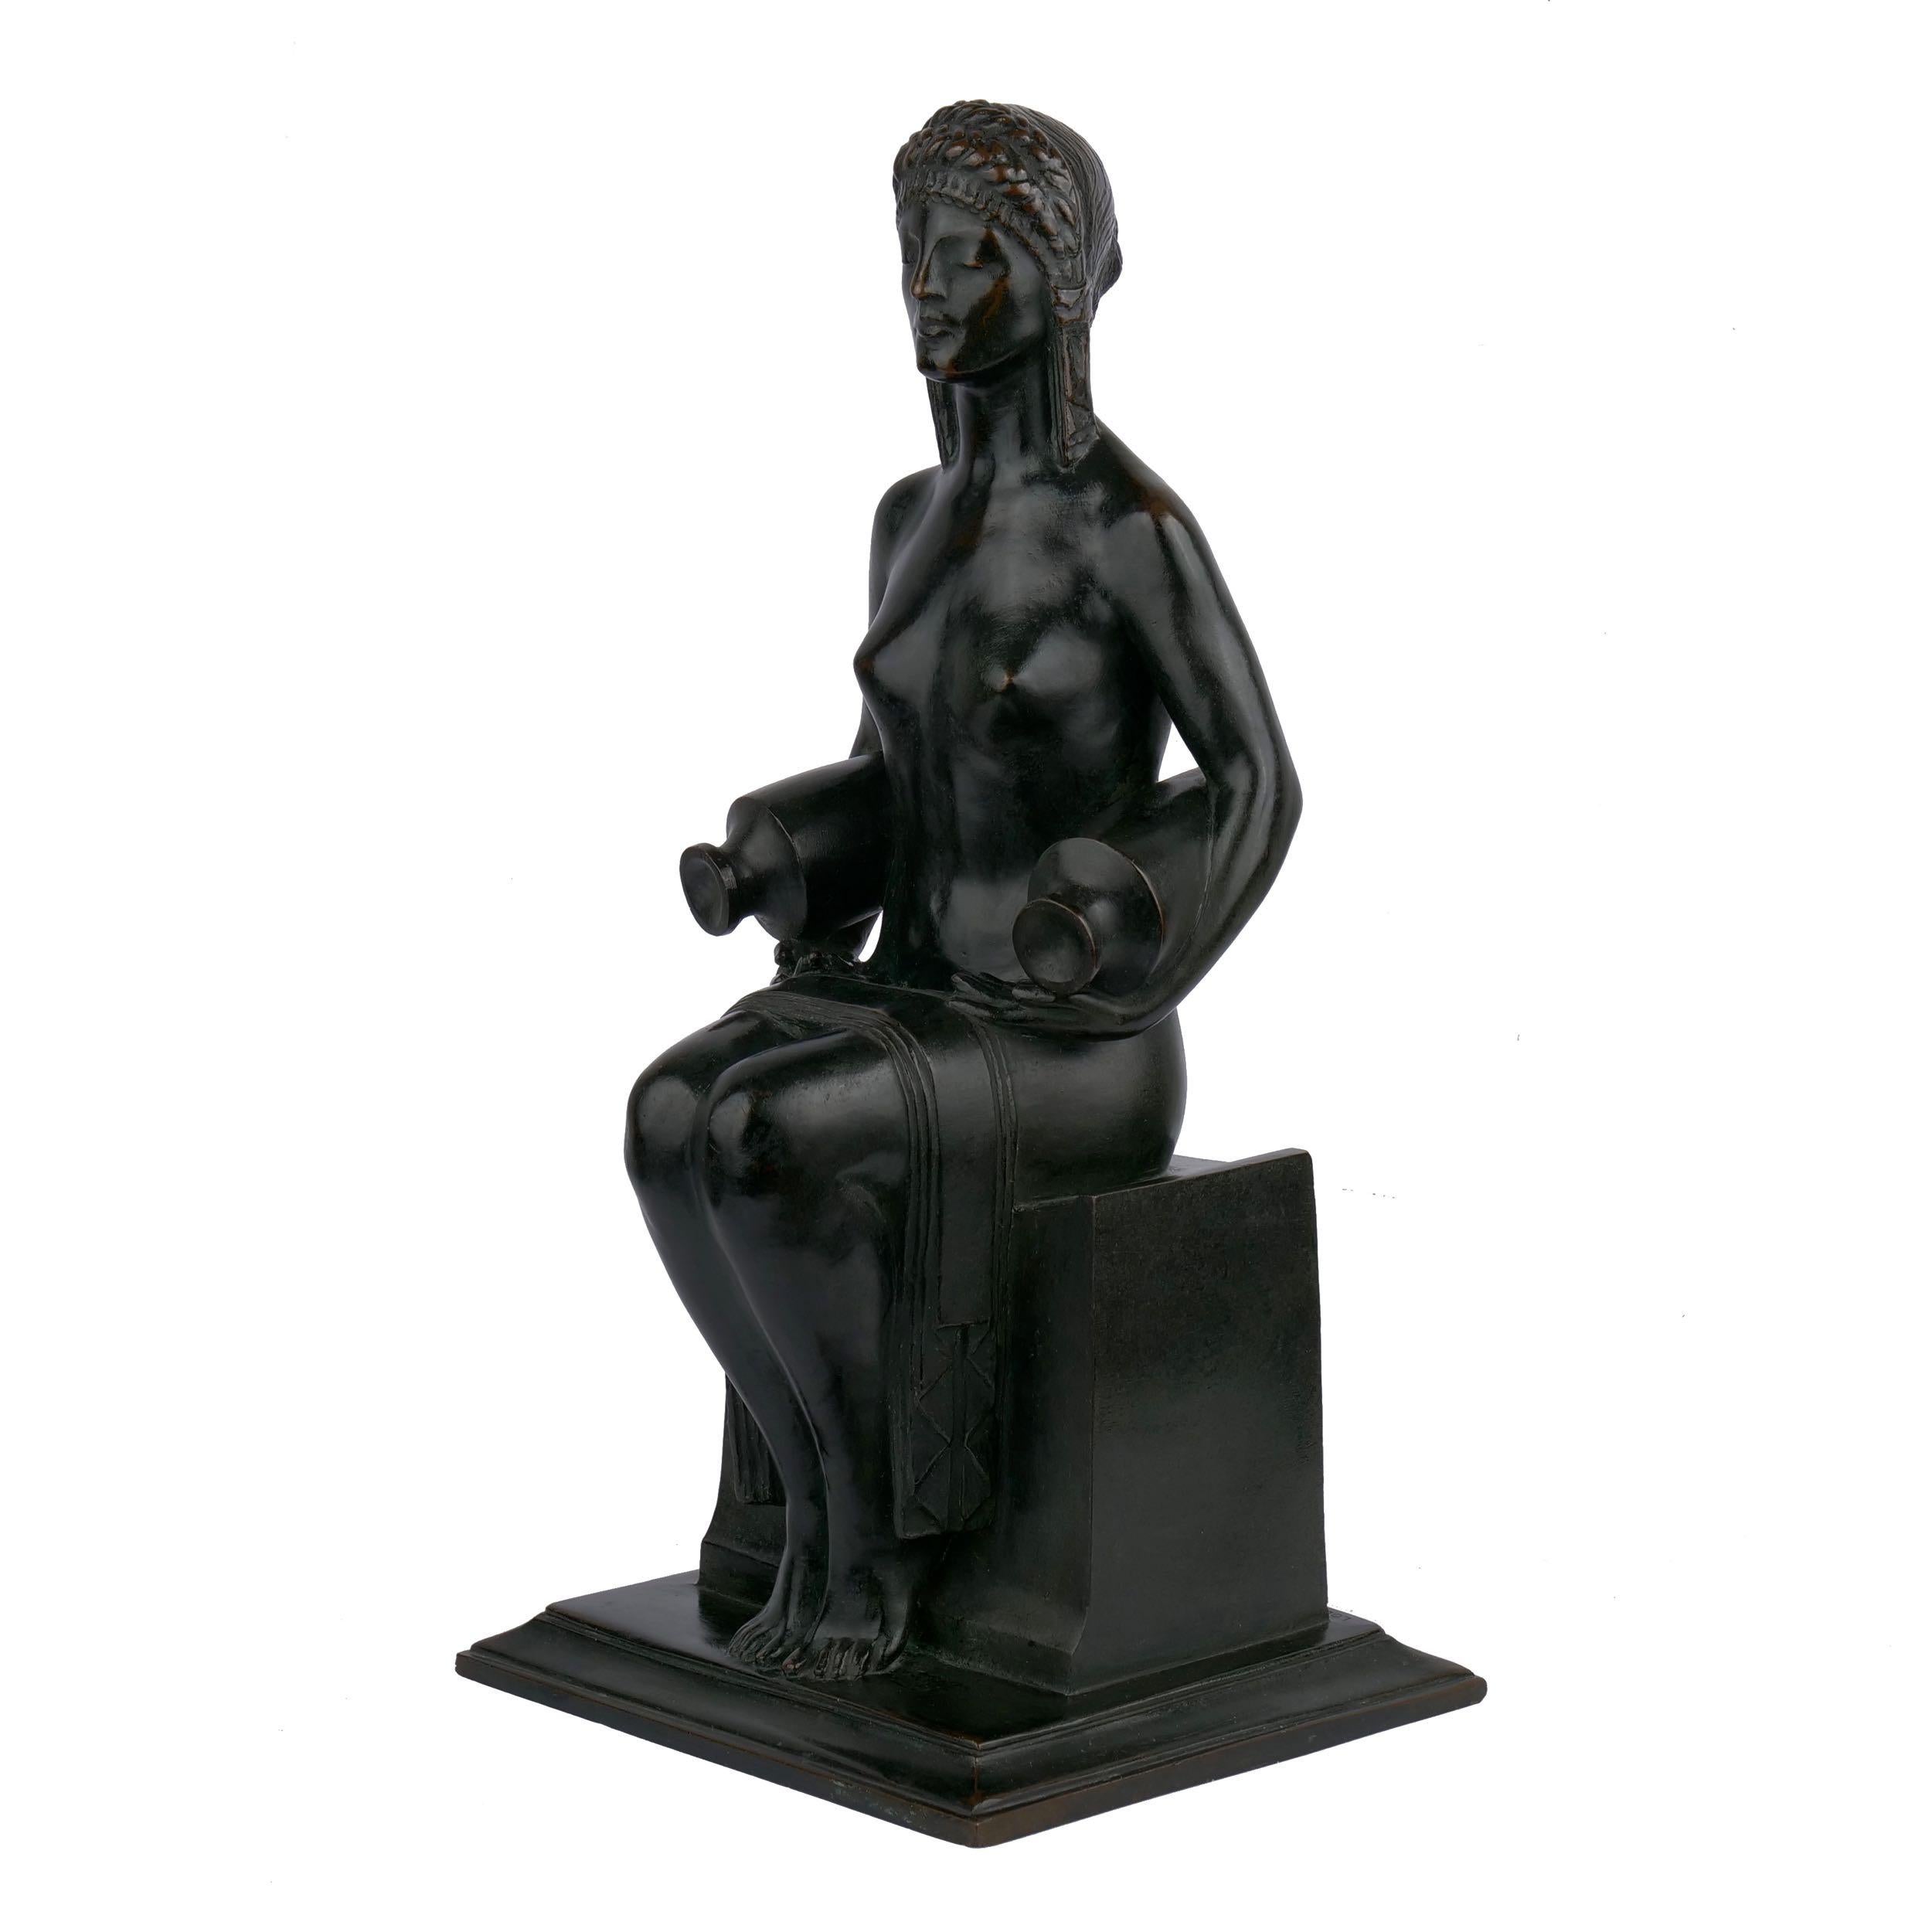 Art Deco “Water Carrier” '1914' American Bronze Sculpture by Louise Allen Hobbs & Gorham